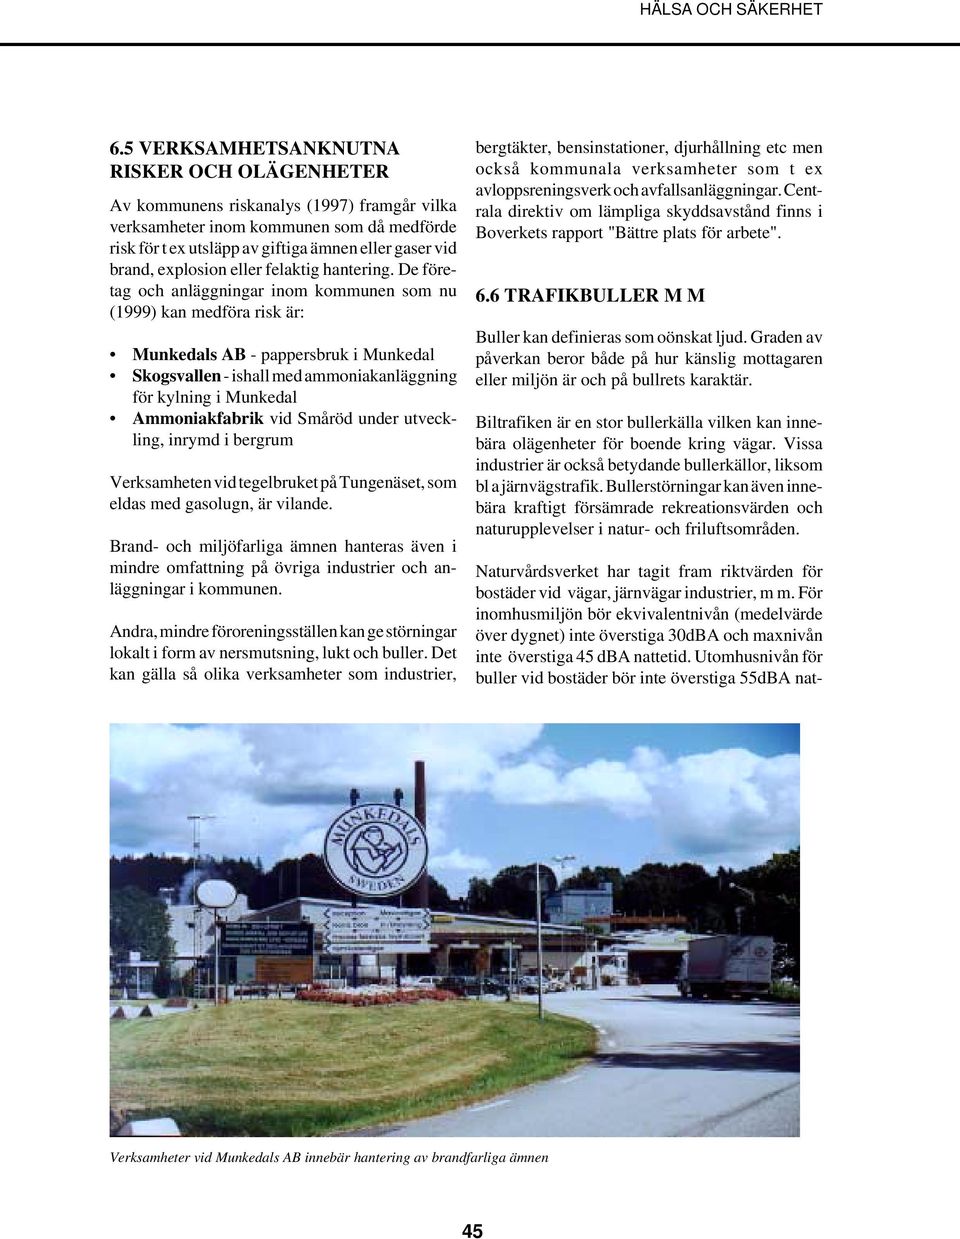 De företag och anläggningar inom kommunen som nu (1999) kan medföra risk är: Munkedals AB - pappersbruk i Munkedal Skogsvallen - ishall med ammoniakanläggning för kylning i Munkedal Ammoniakfabrik